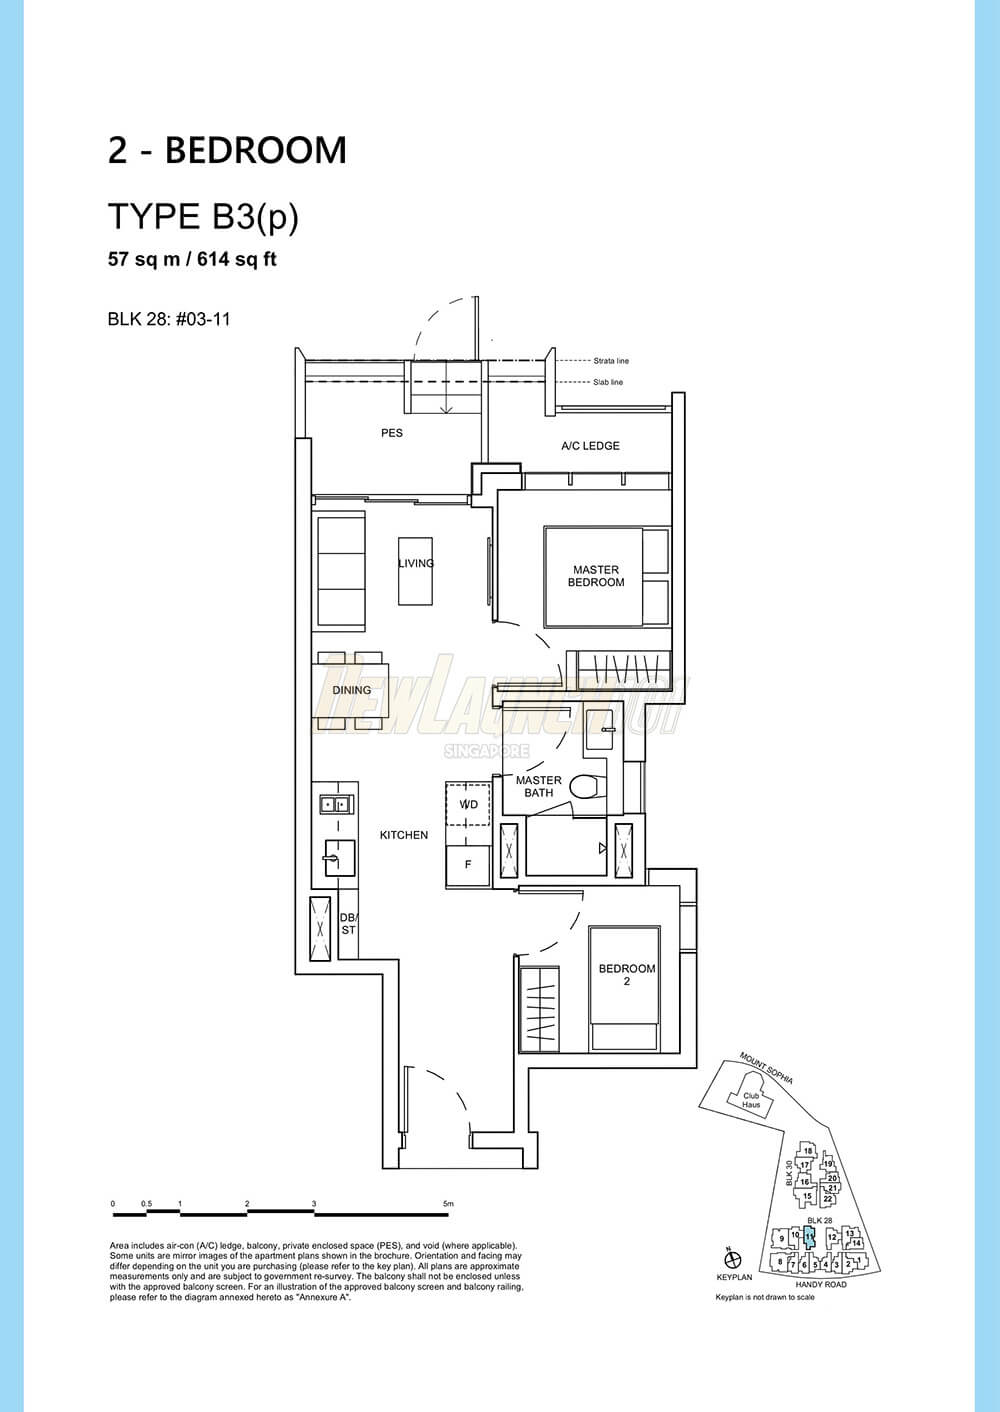 Haus on Handy Floor Plan 2-Bedroom Type B3p